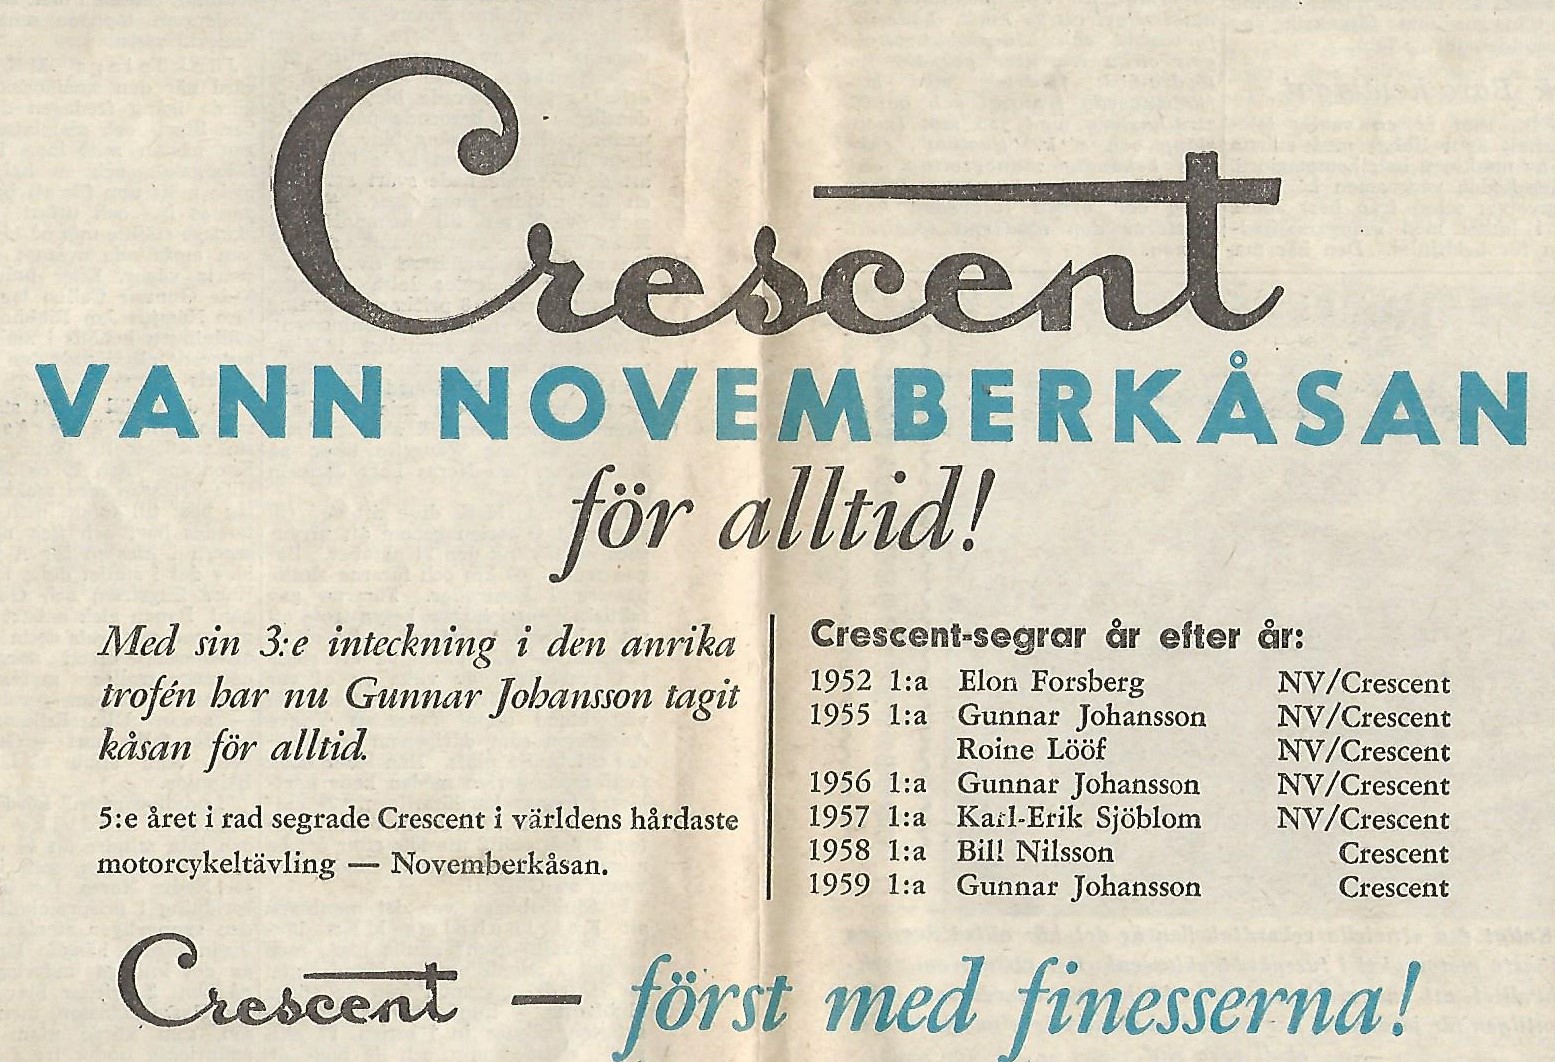 Kåsan Crescent annons 2